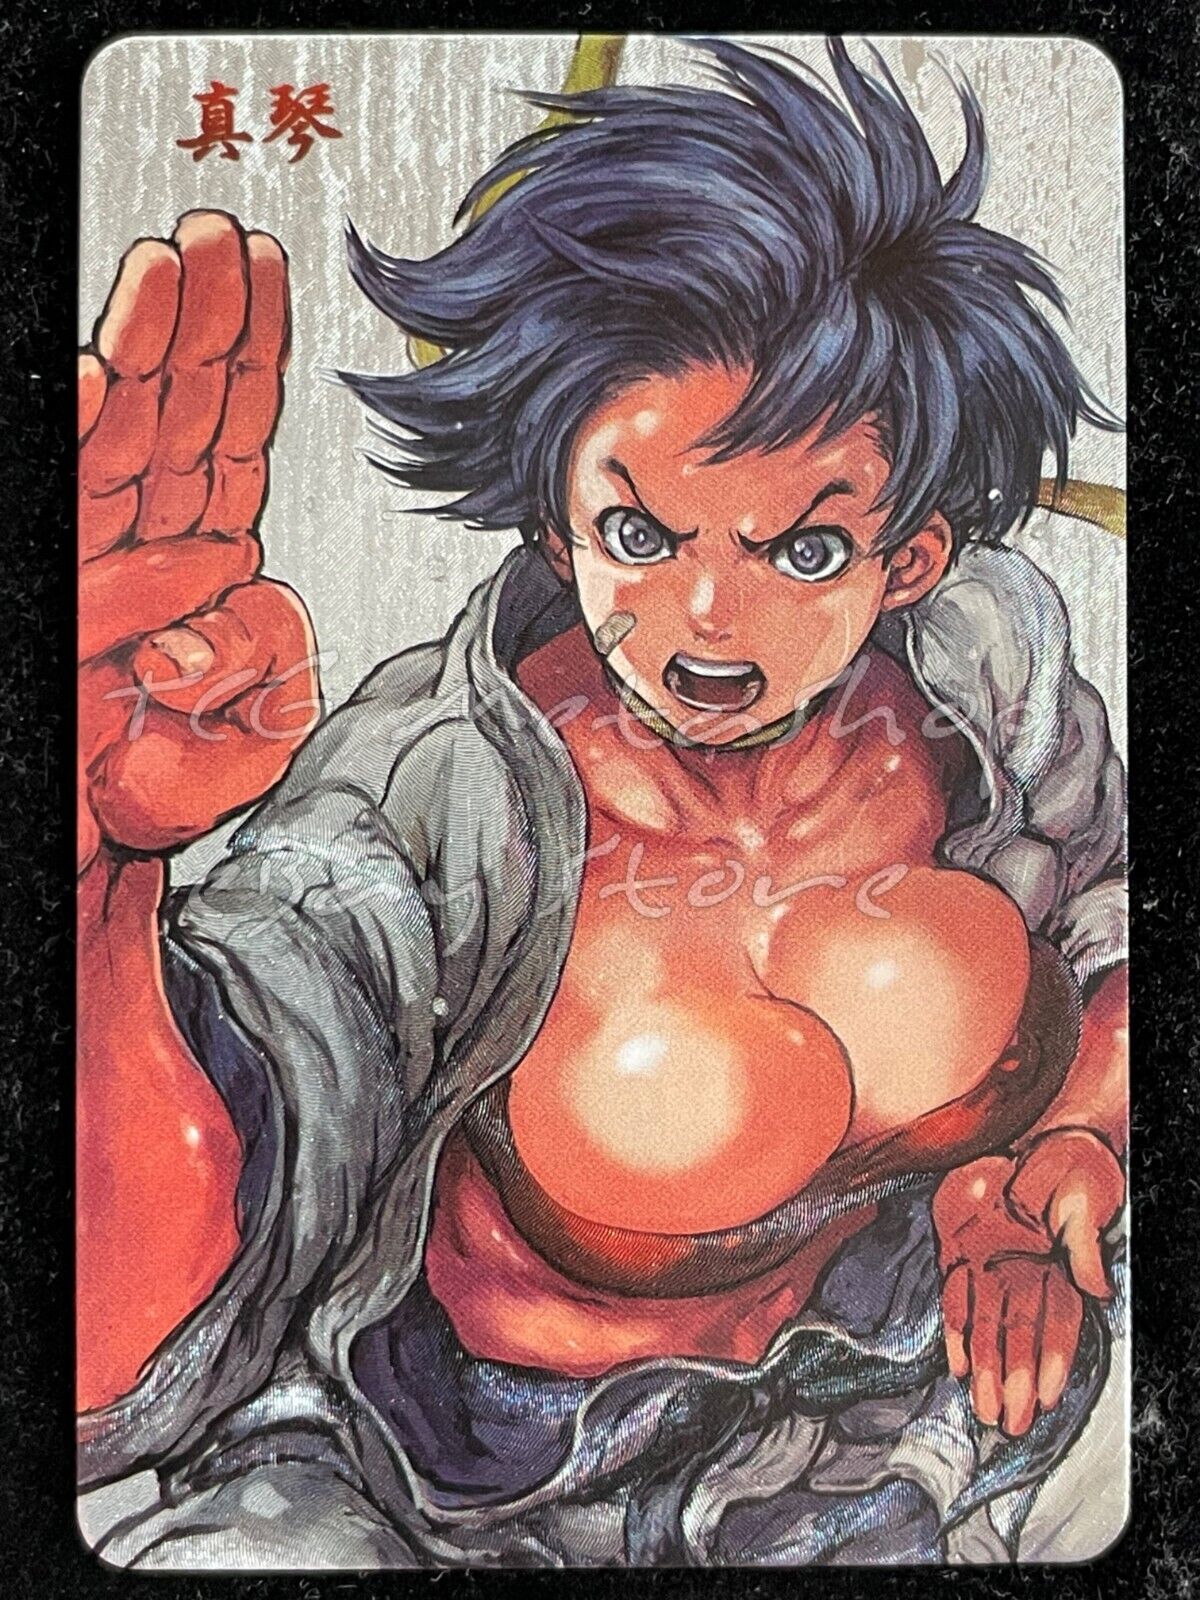 🔥 Makoto Street Fighter Goddess Story Anime Card ACG # 2338 🔥